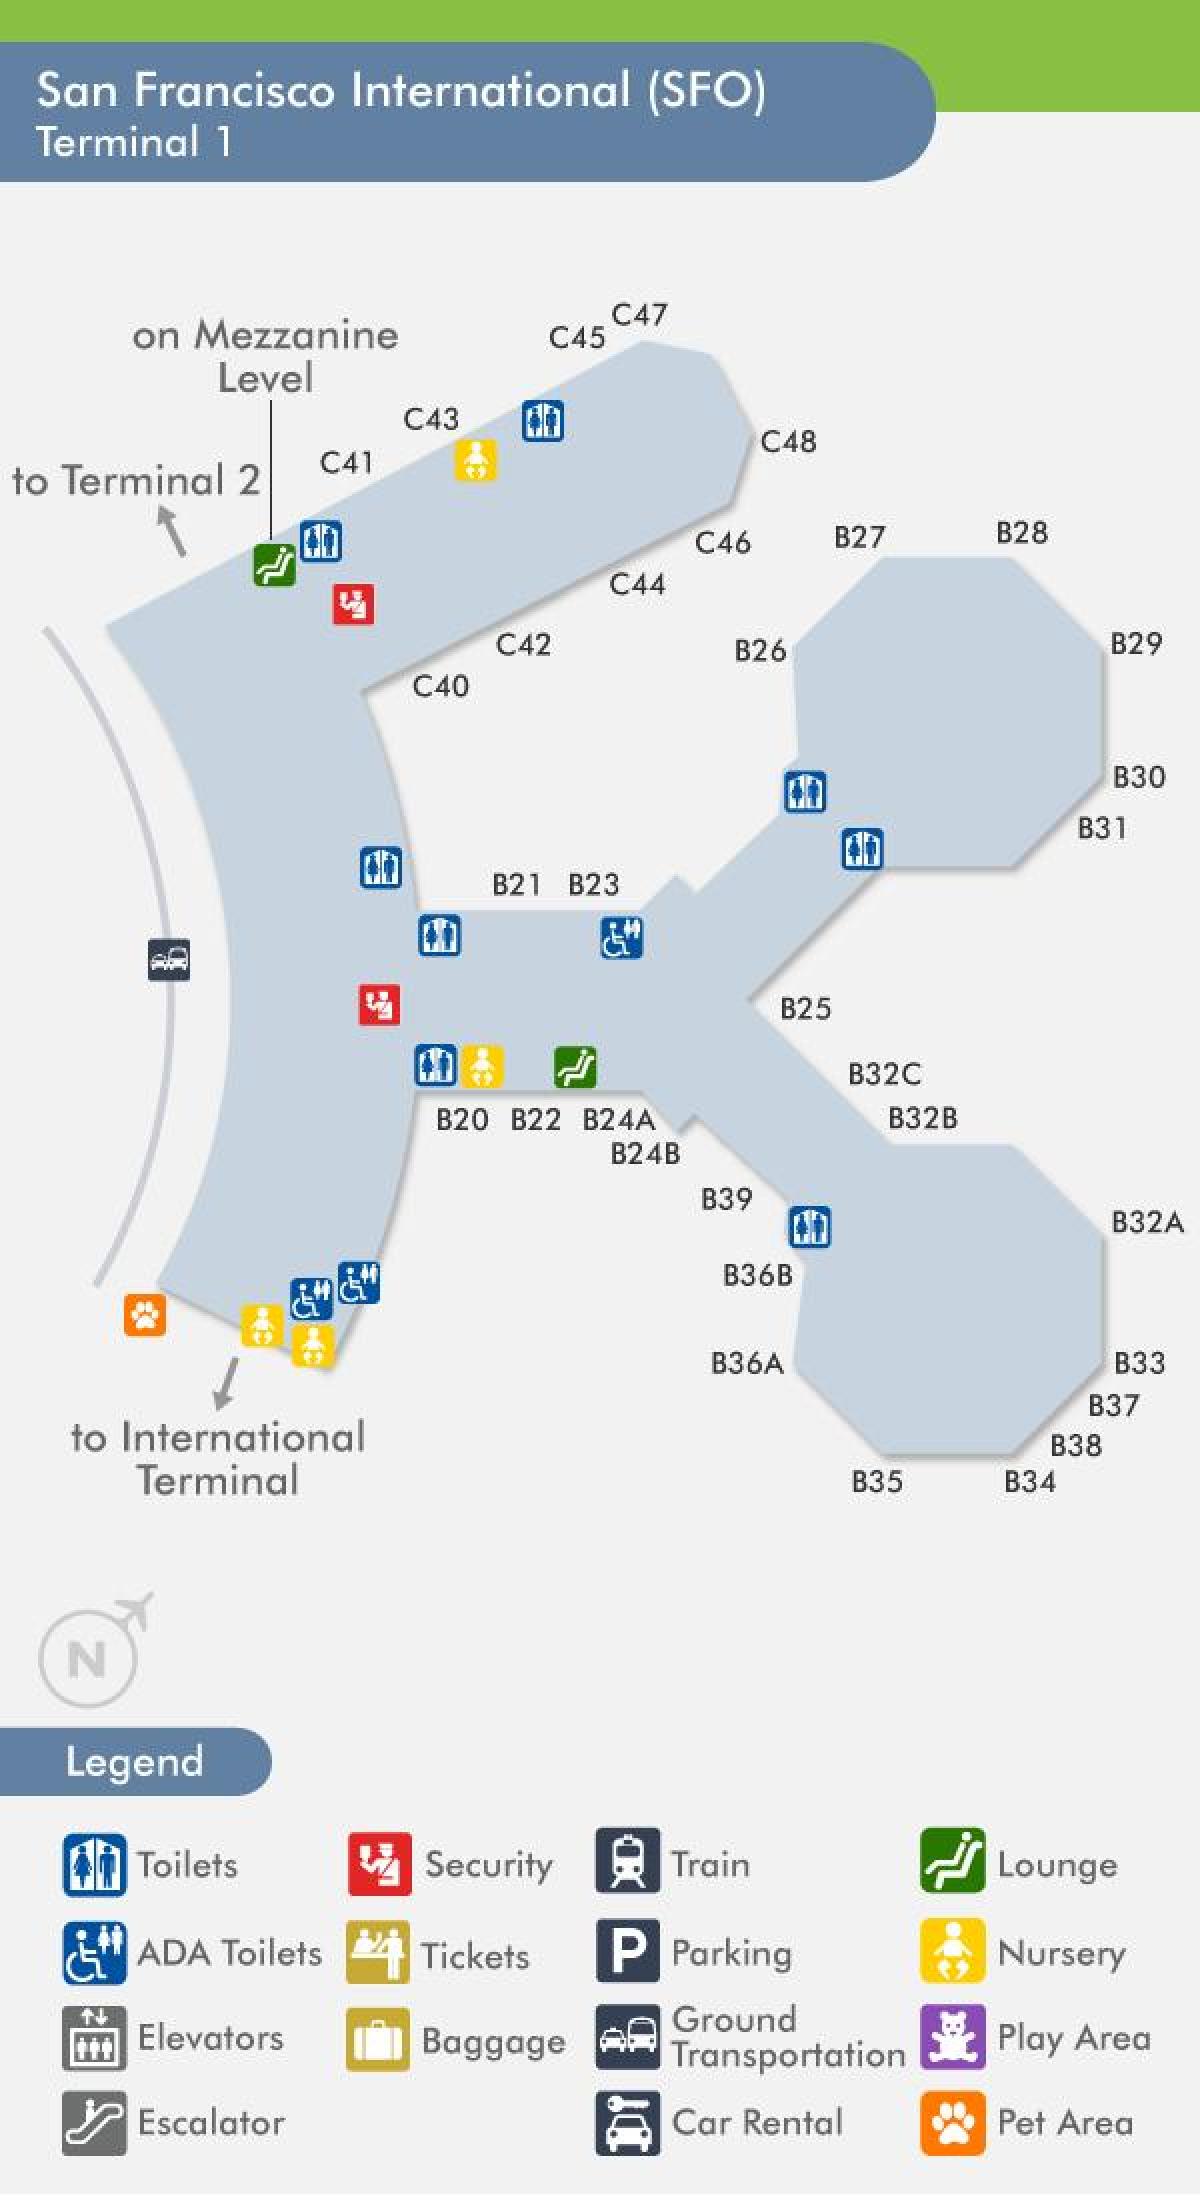 旧金山的机场终端1的地图